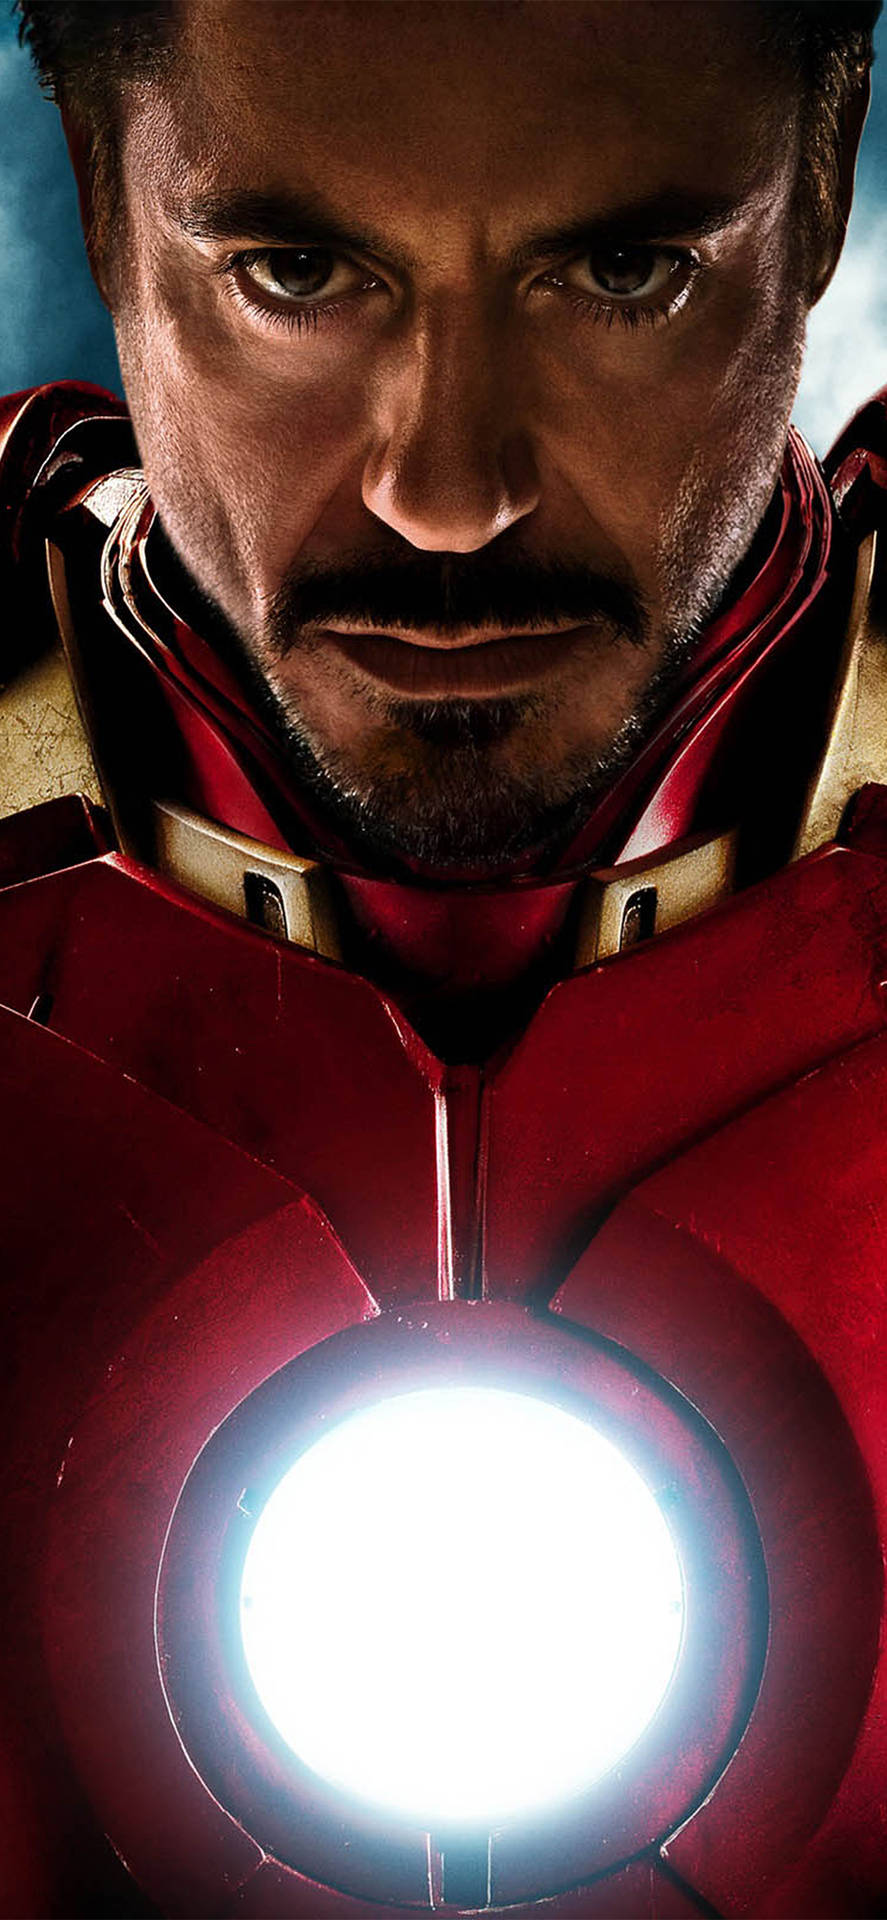 Tony Stark kendt som Iron Man Superhelt Wallpaper